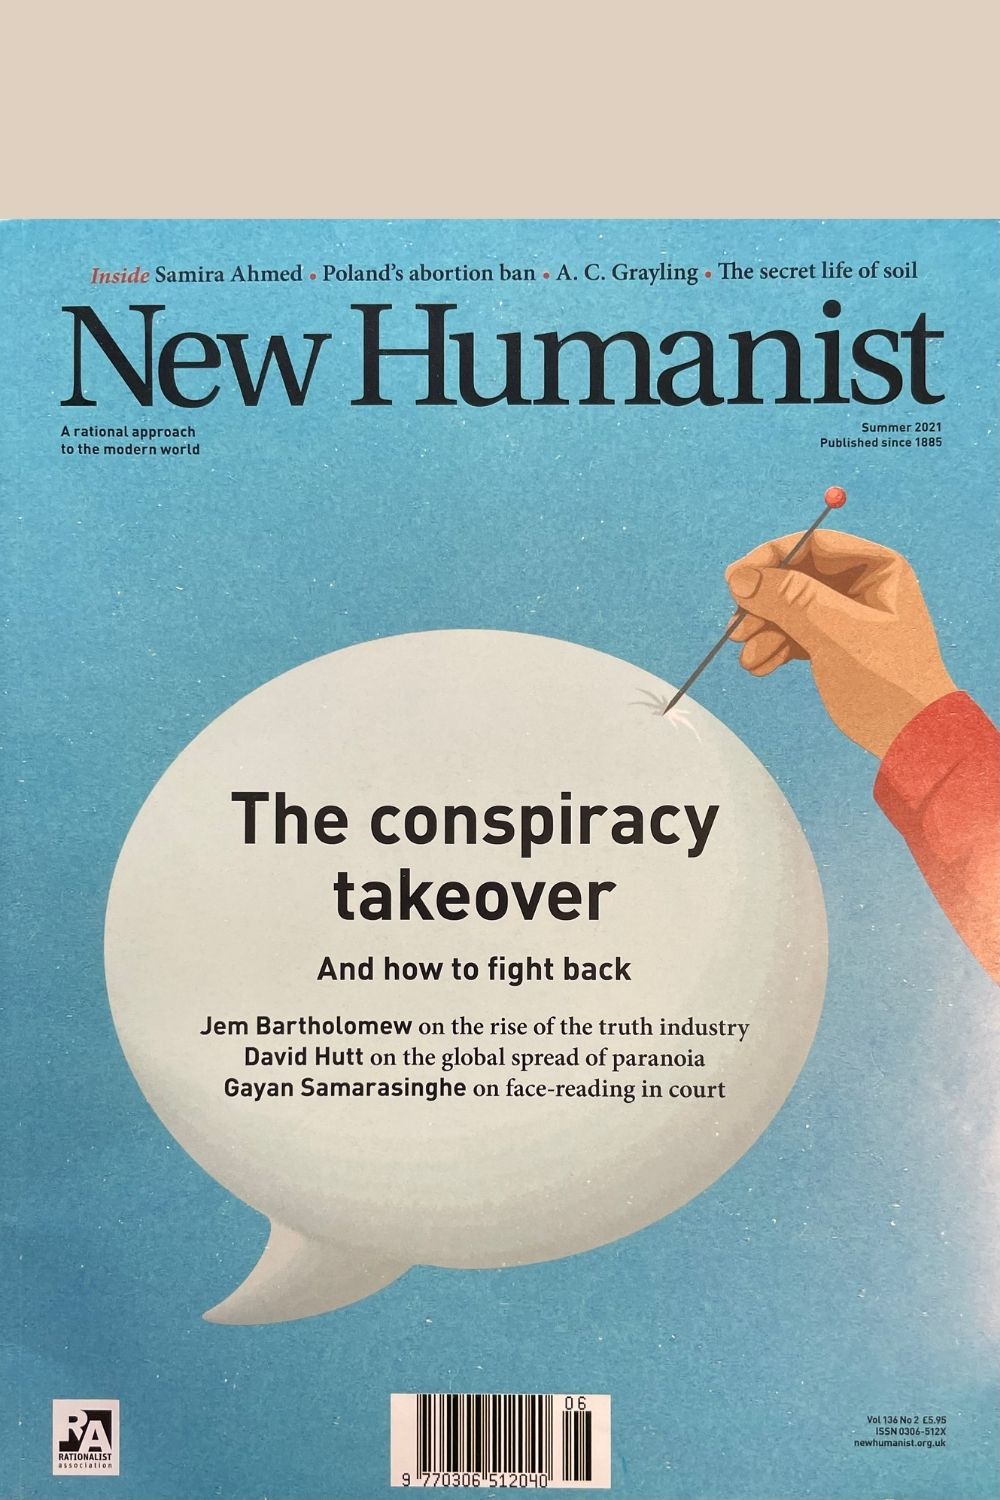 New Humanist Magazine Summer 2021 issue